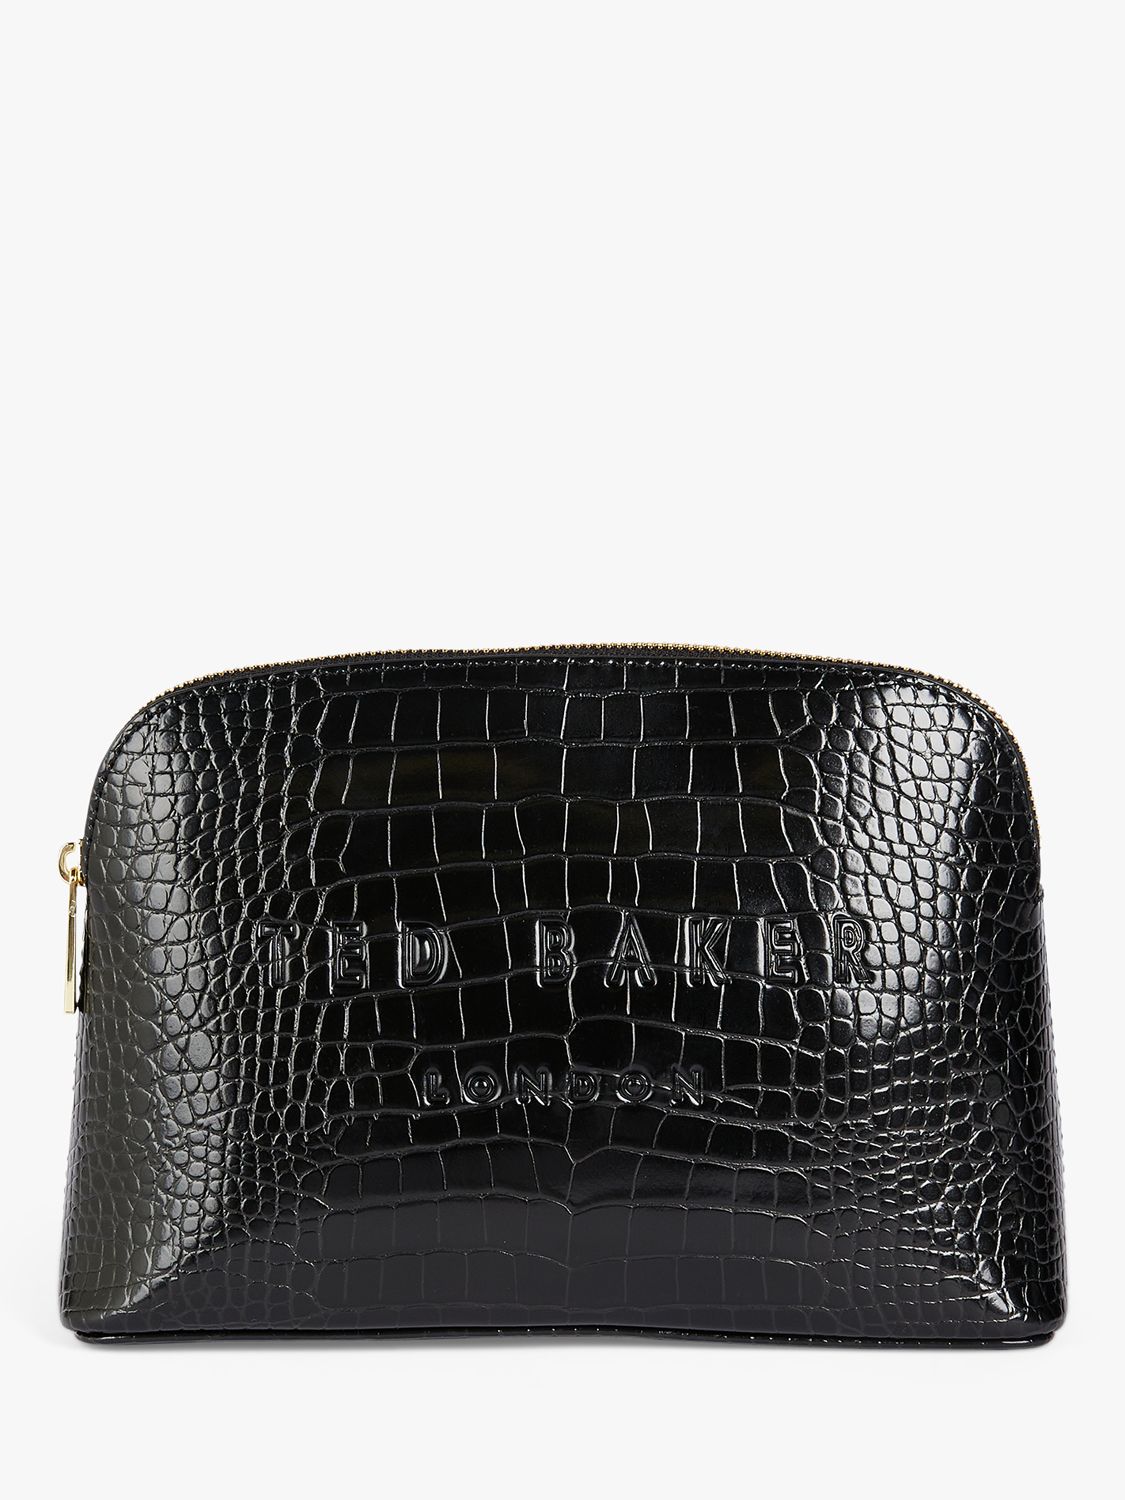 Ted Baker Crocala Croc Effect Makeup Bag, Black, One Size 1